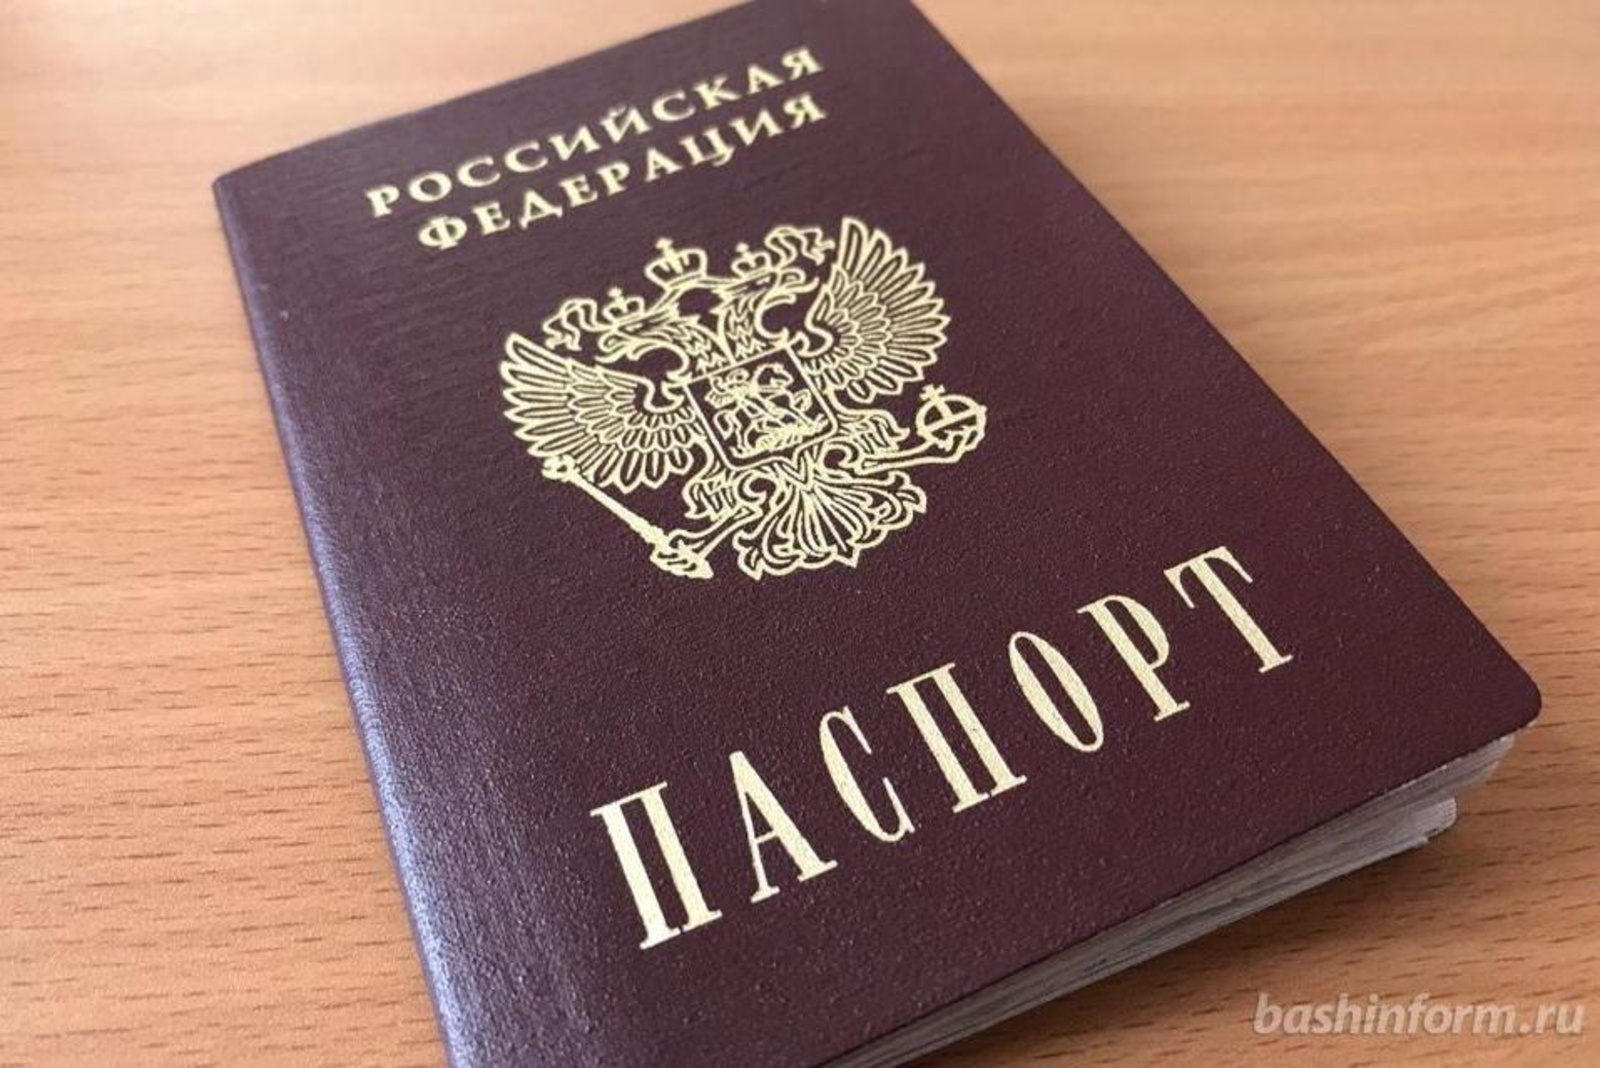 В России отменили обязательные отметки в паспорте о браке и детях